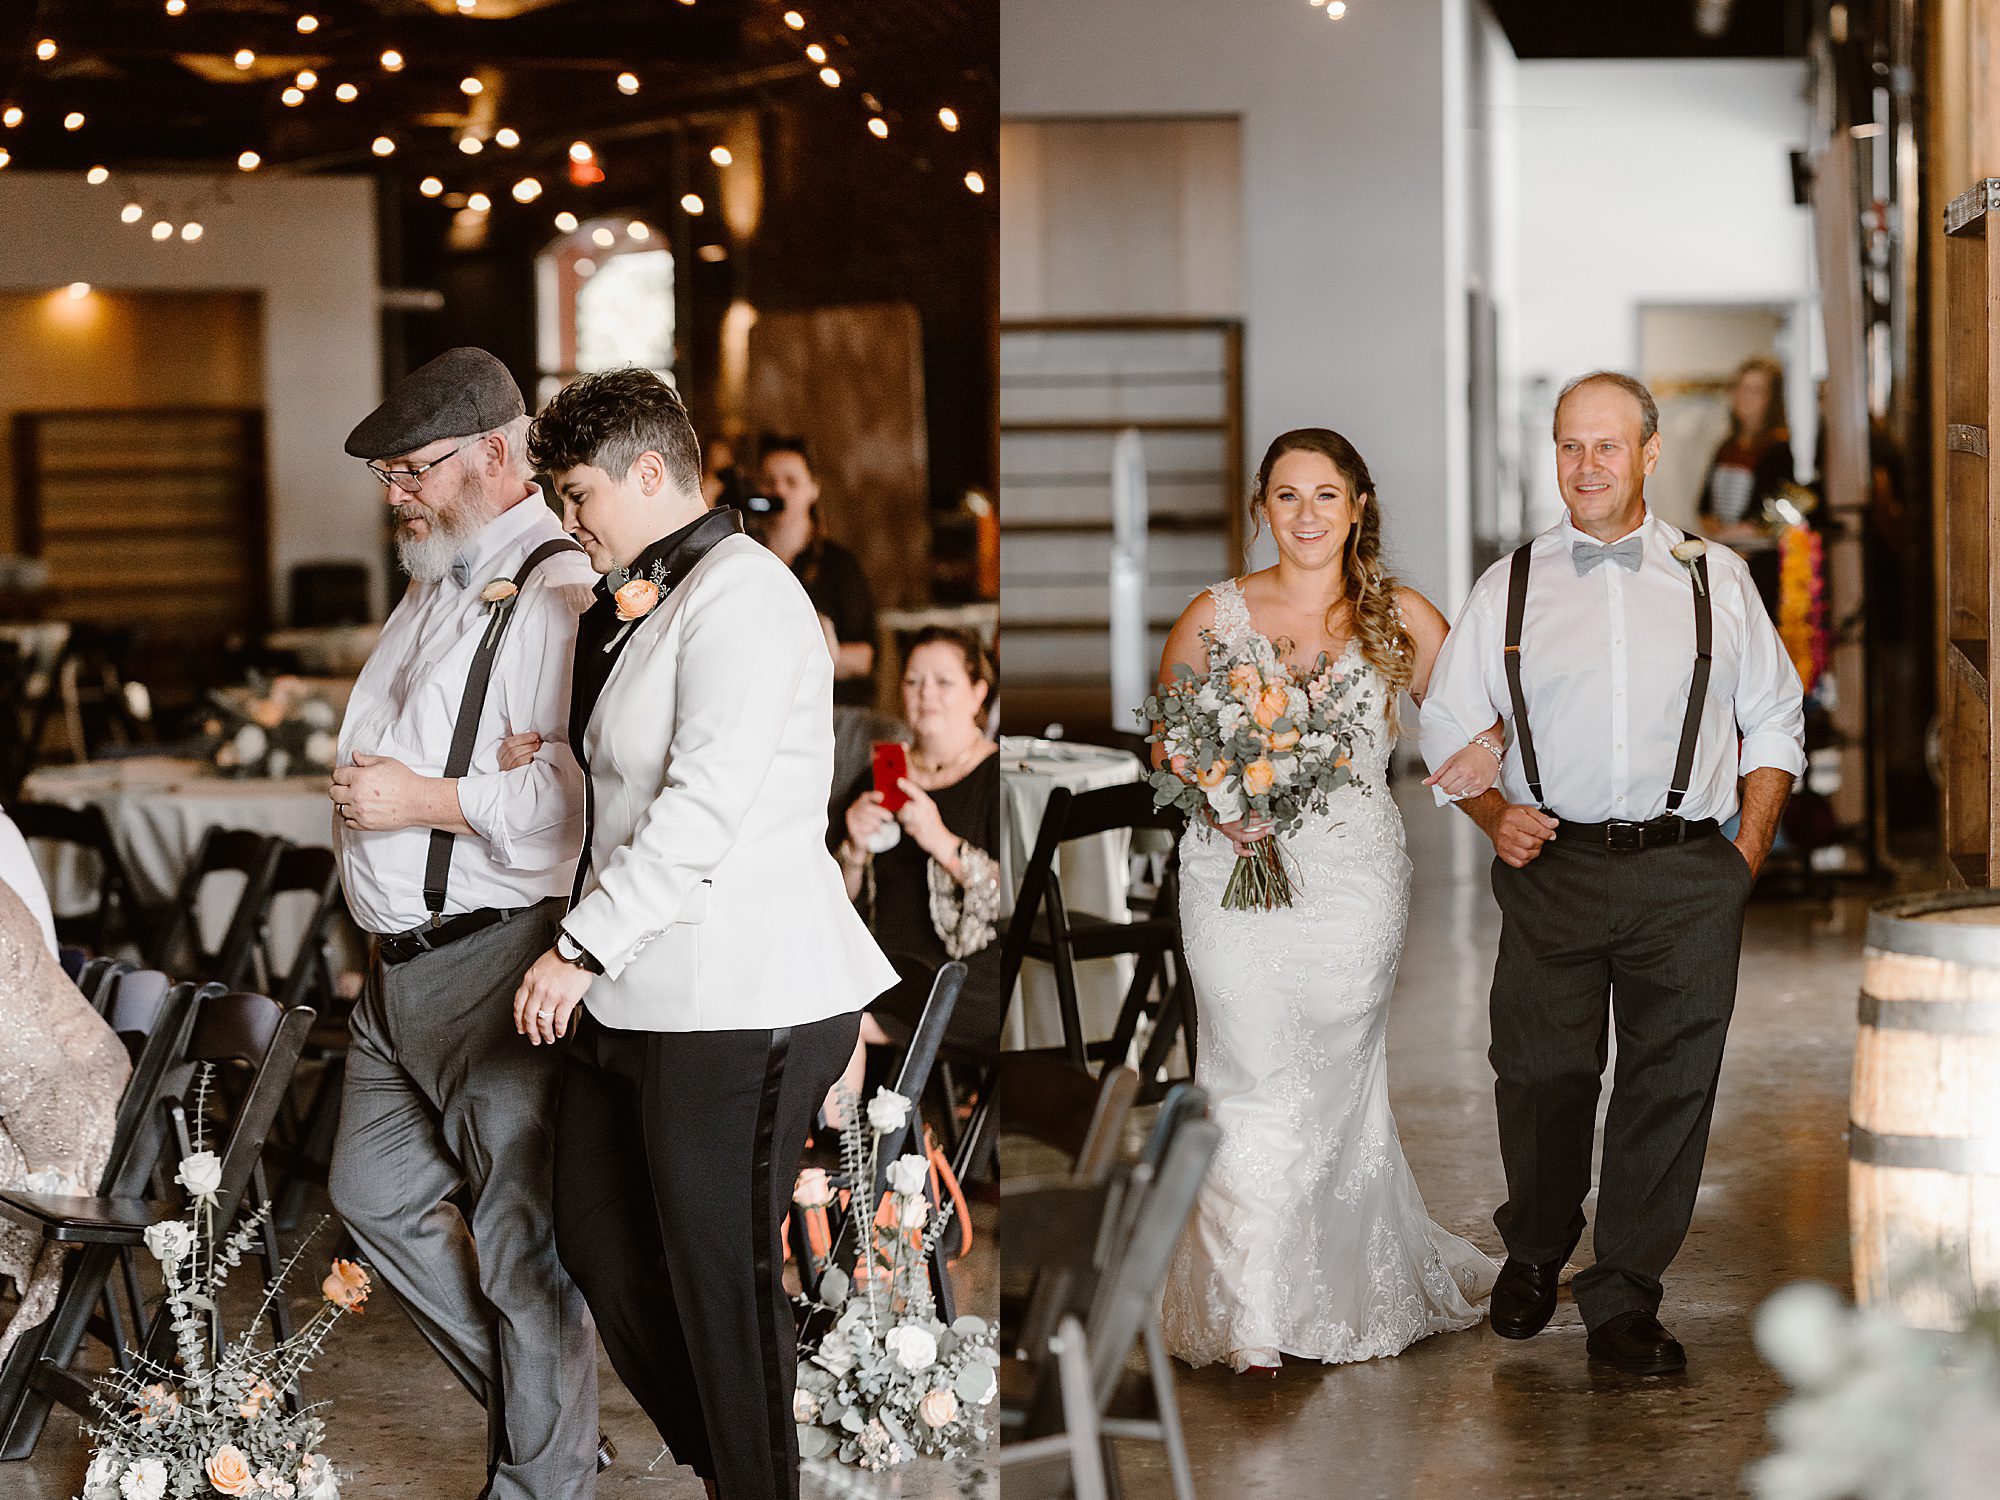 lgbtq bride walks down aisle at intimate wedding at Jackson Terminal